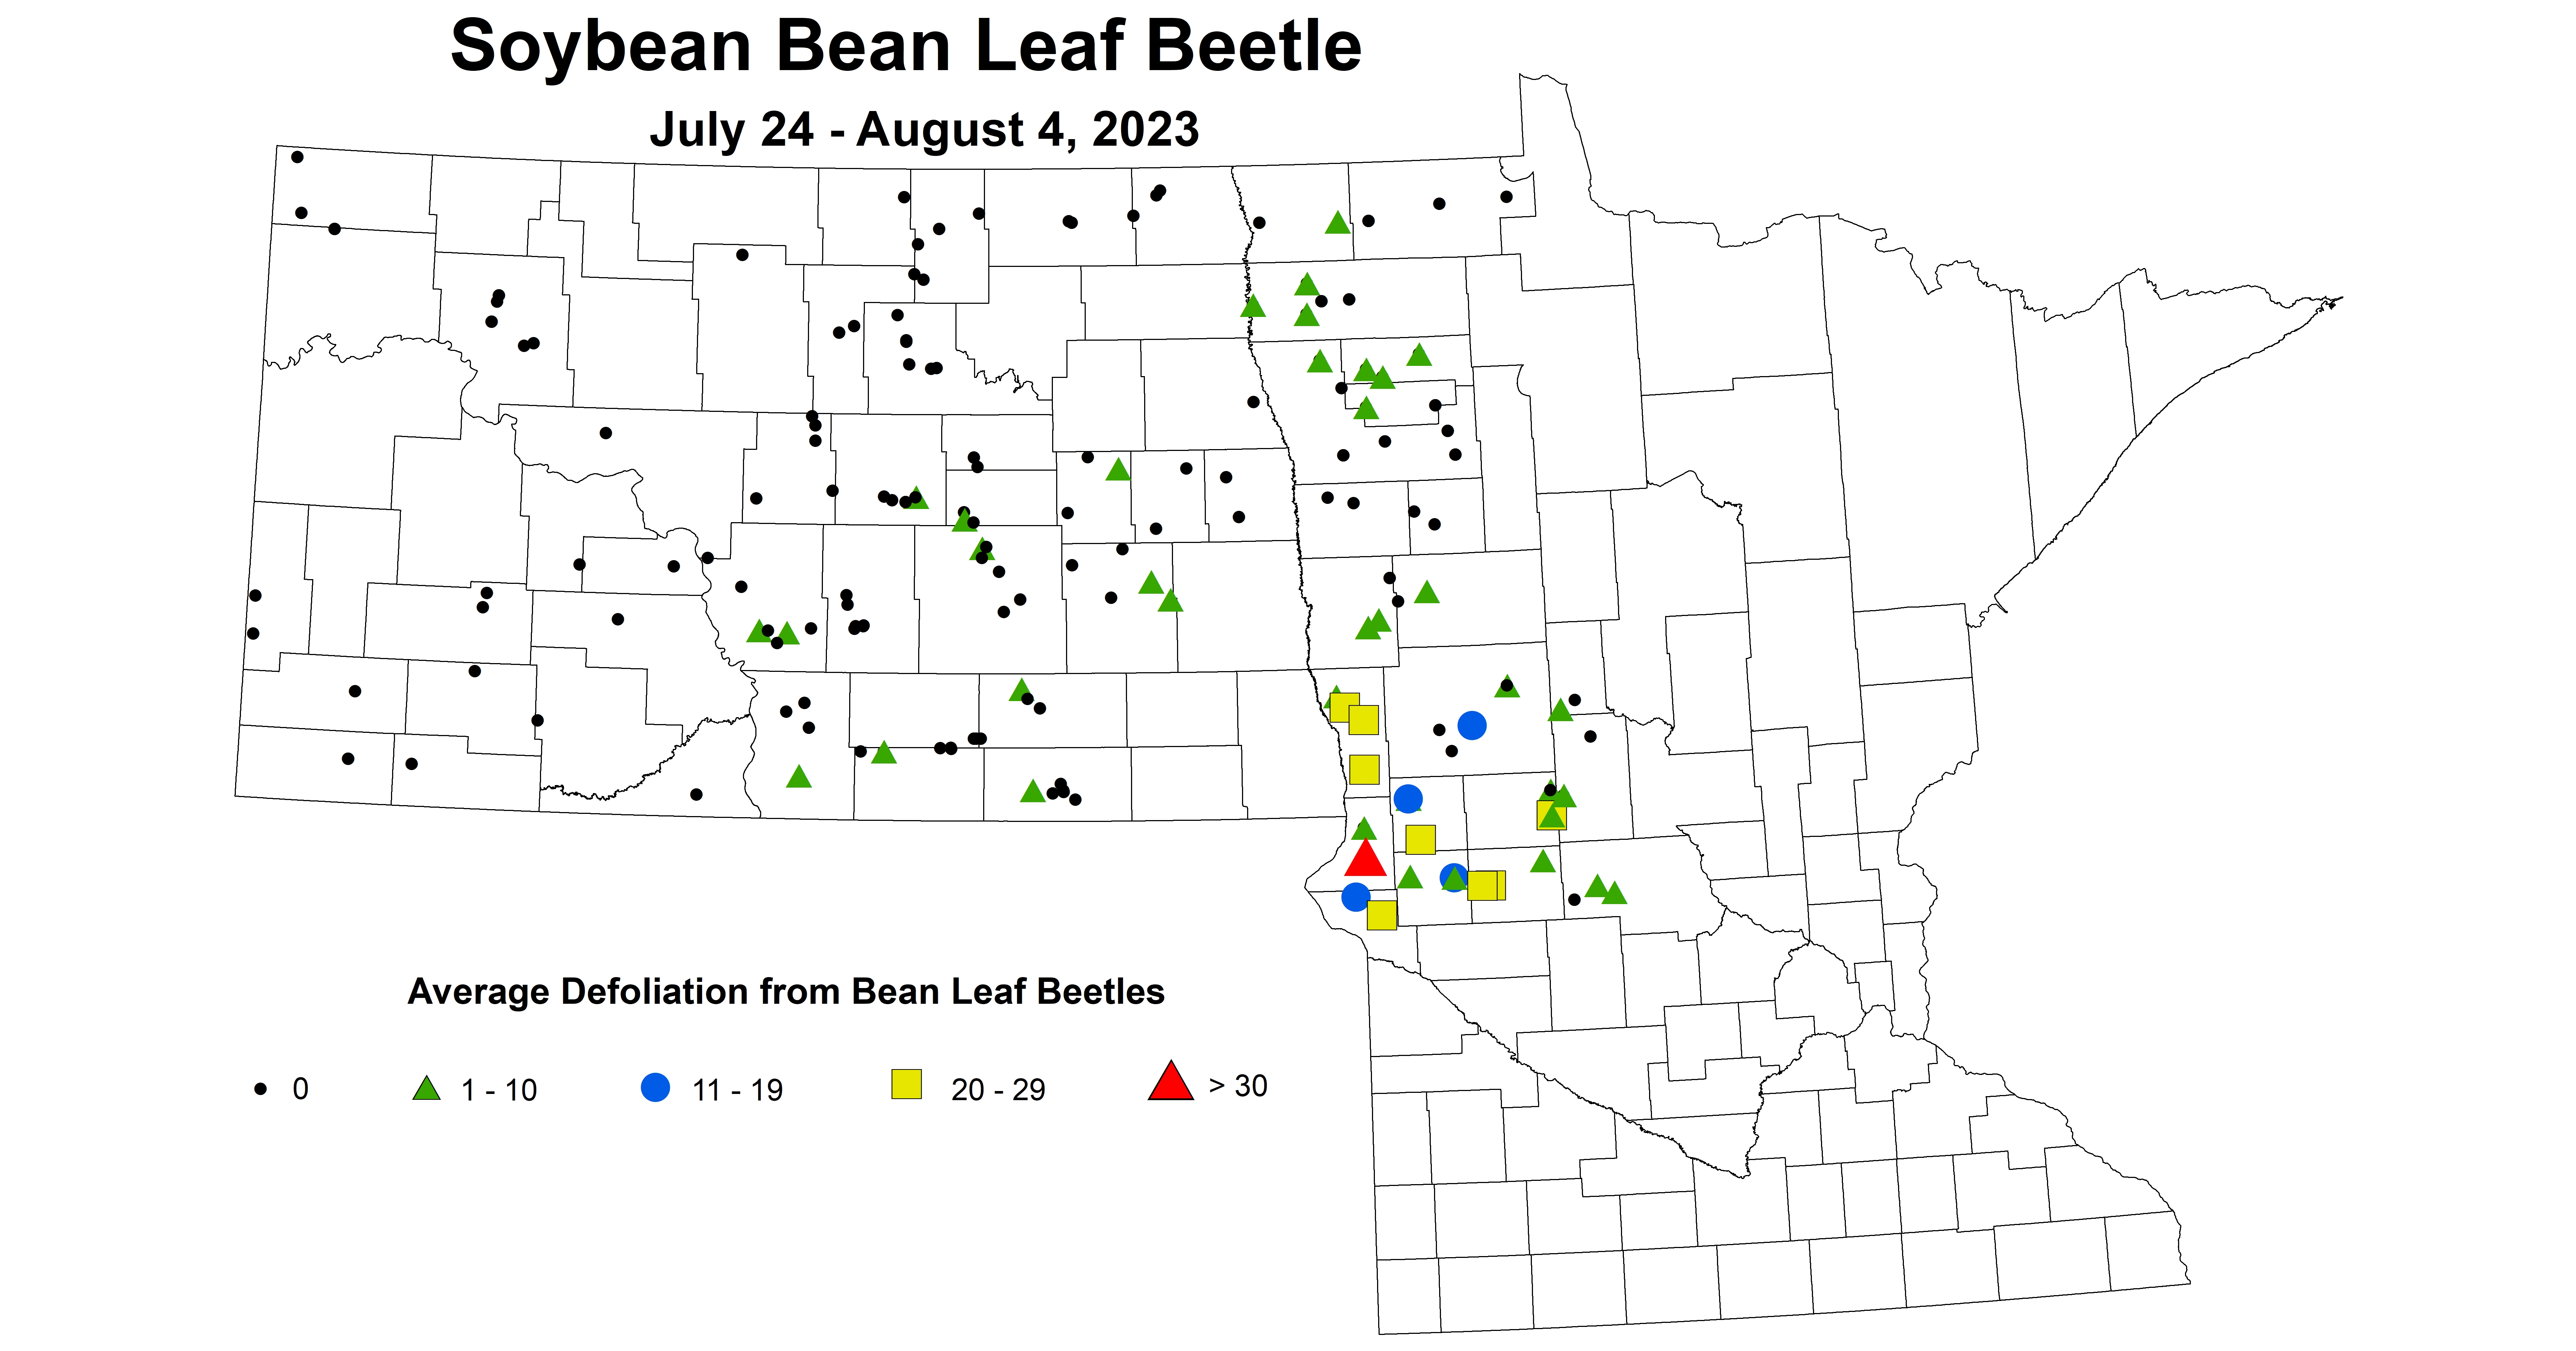 soybean BLB defoliation 7.24-8.4 2023